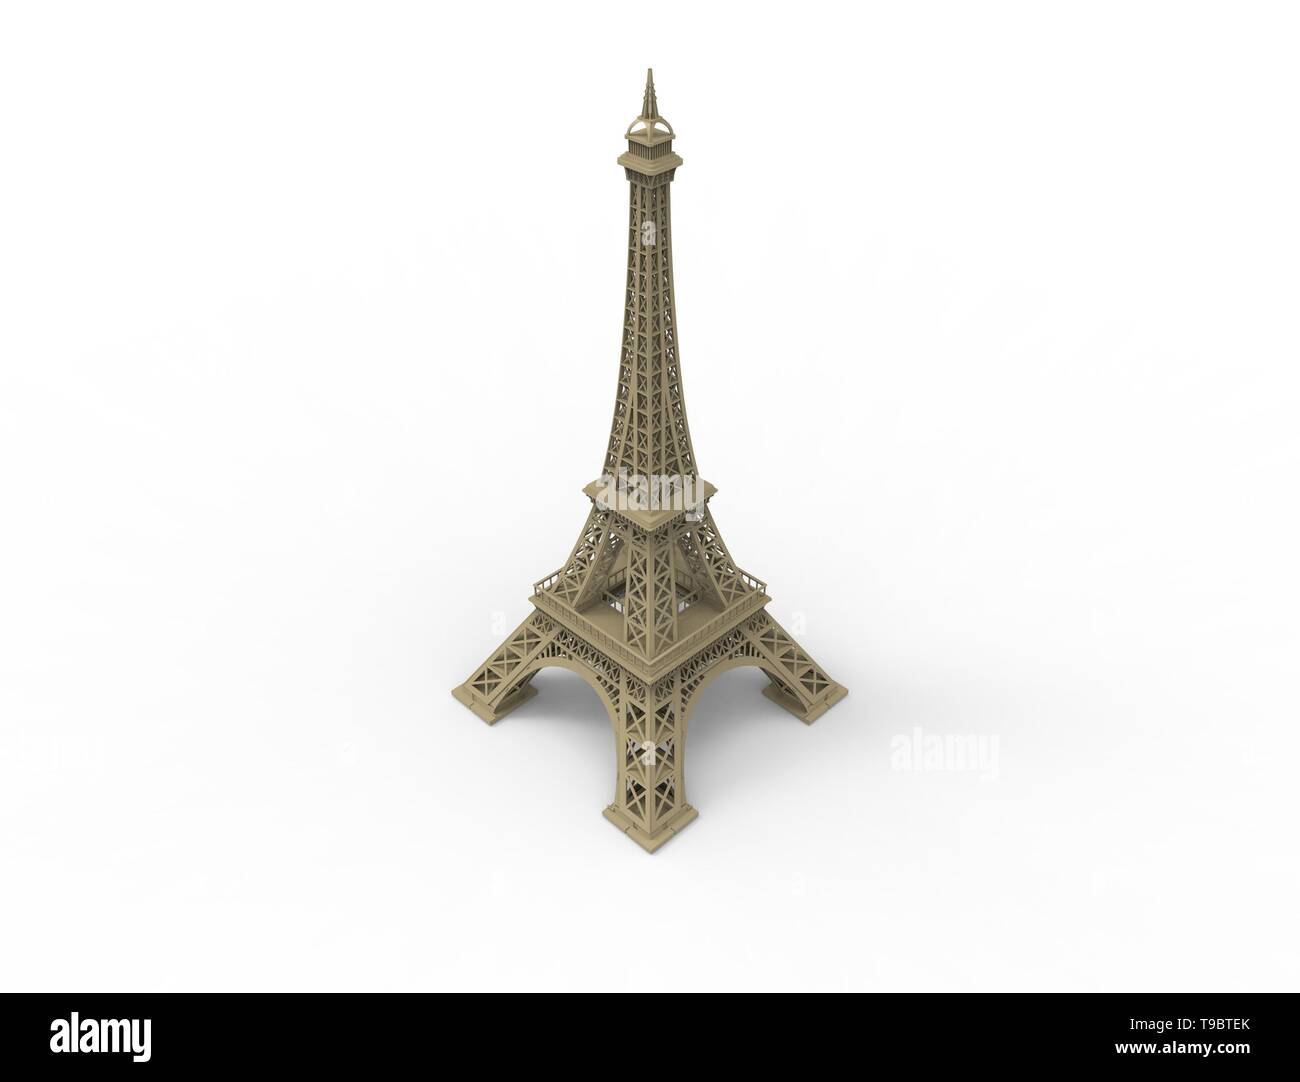 Le rendu 3D de l'attraction touristique Tour Eiffel in Paris France. Banque D'Images